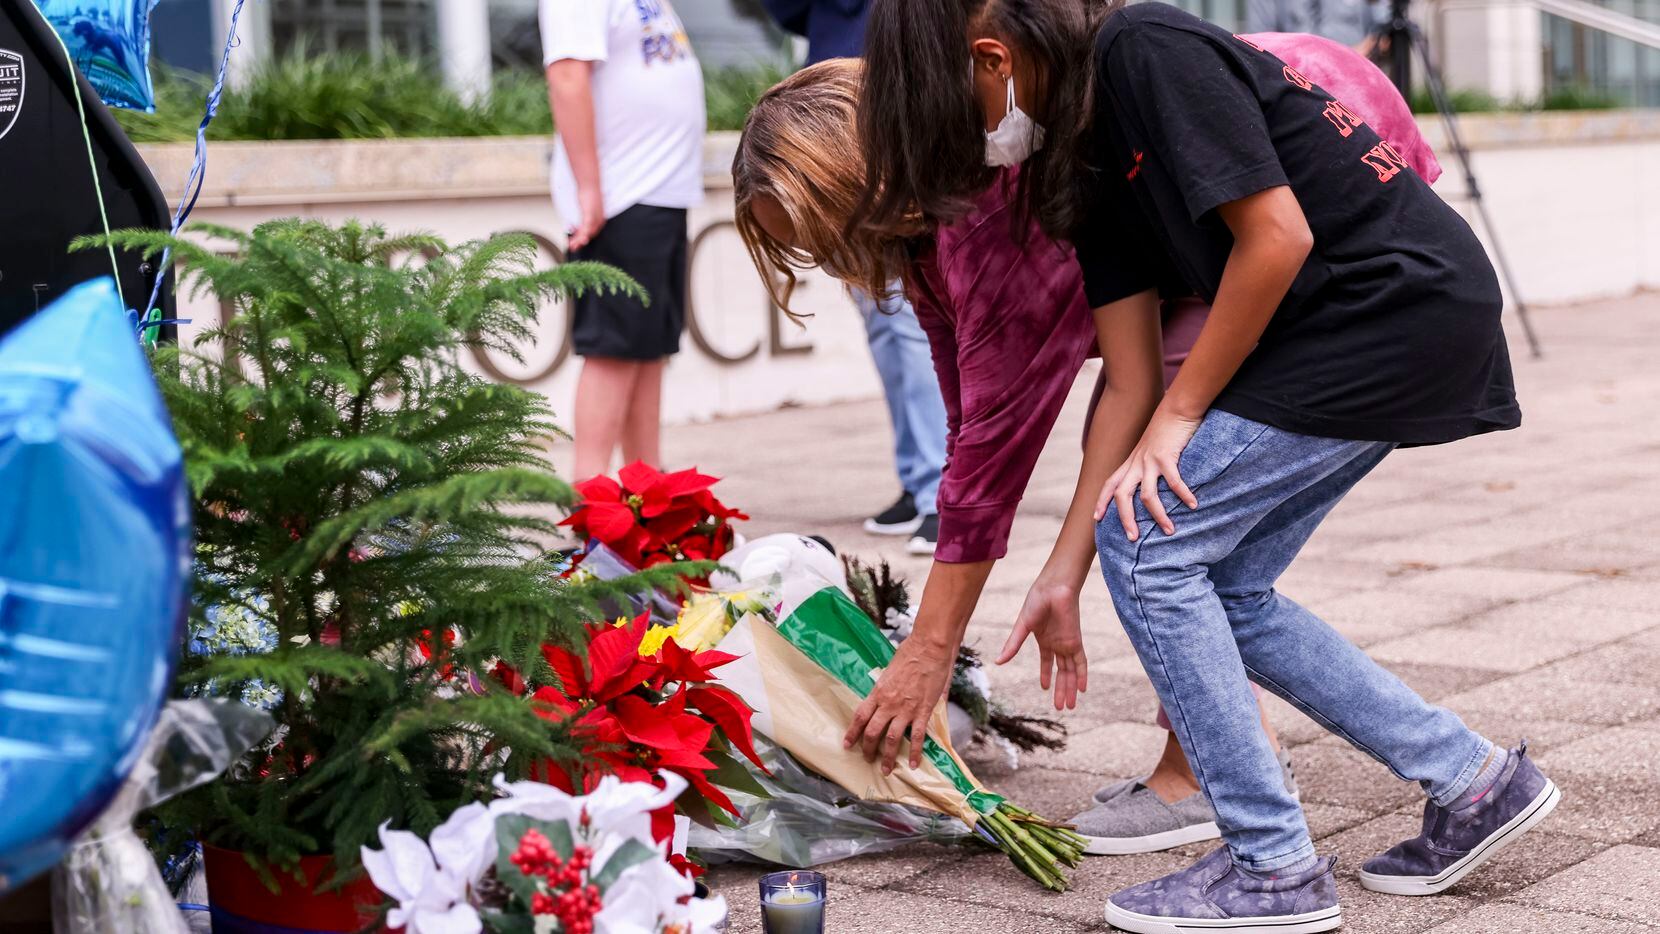 Muchas personas se han acercado a dejar flores para el oficial Richard Lee Houston, en Mesquite, quien murió abatido el domingo.